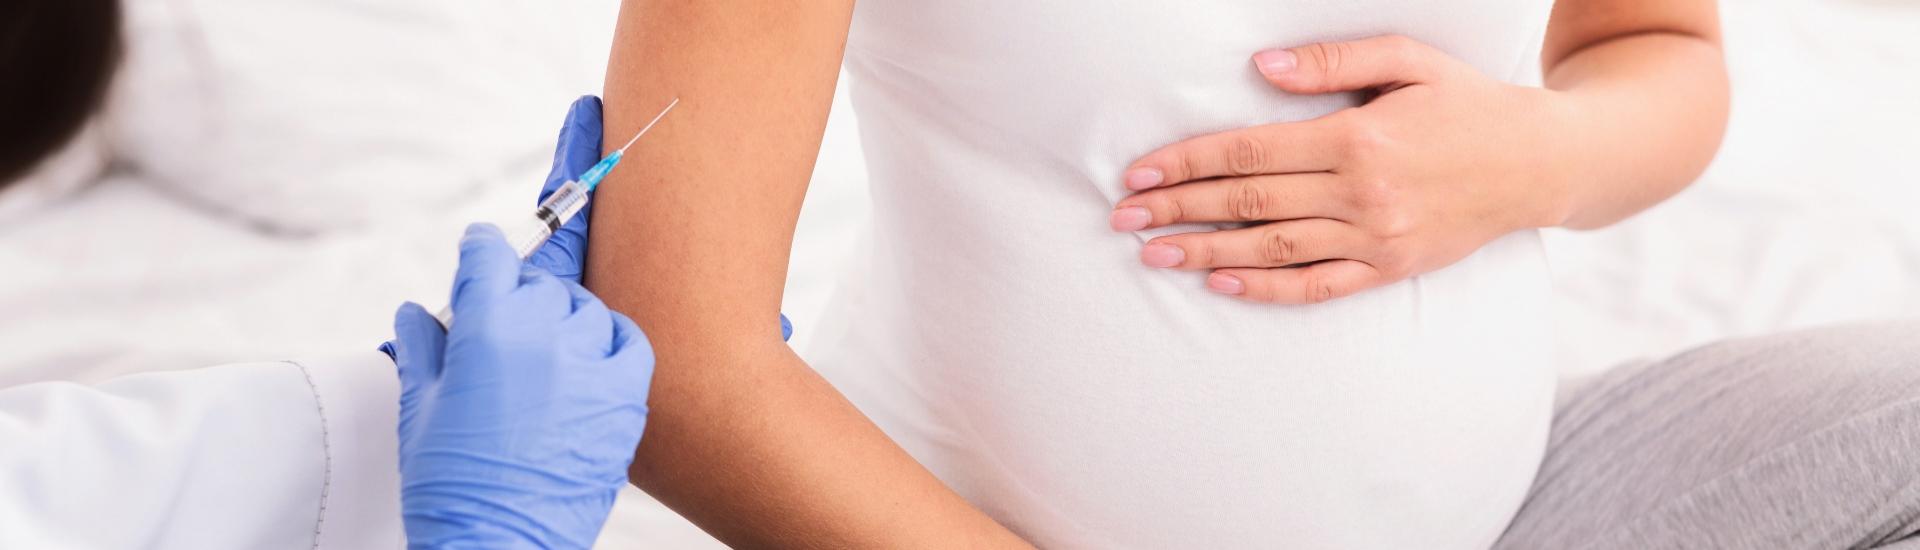 Meer risico voor zwangeren met corona: vragen en zorgen